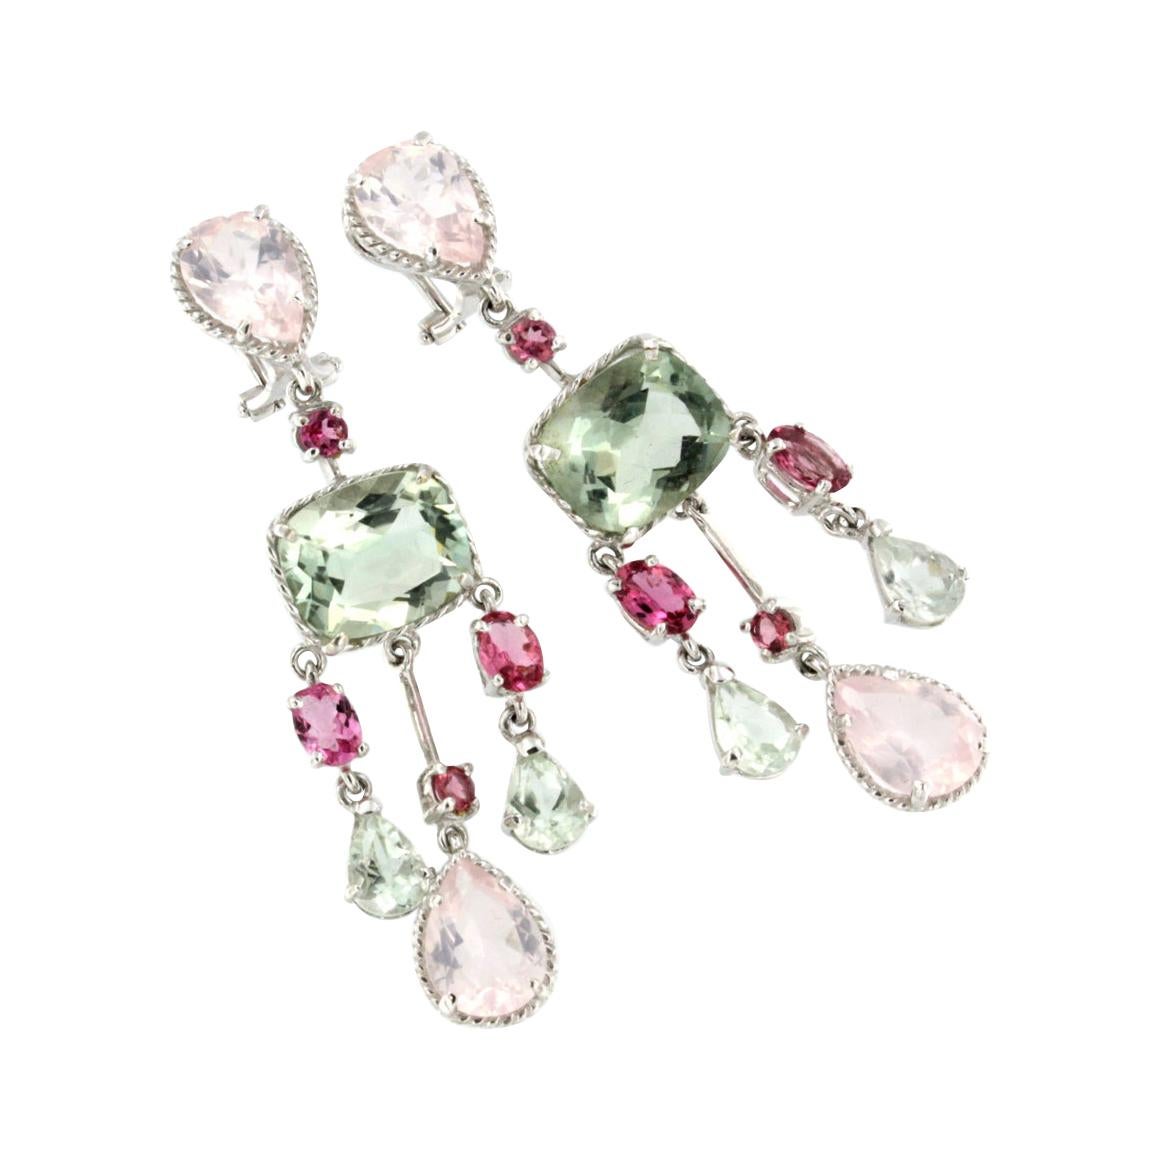 Boucles d'oreilles en or blanc 18 carats avec tourmaline rose, améthyste verte et quartz rose